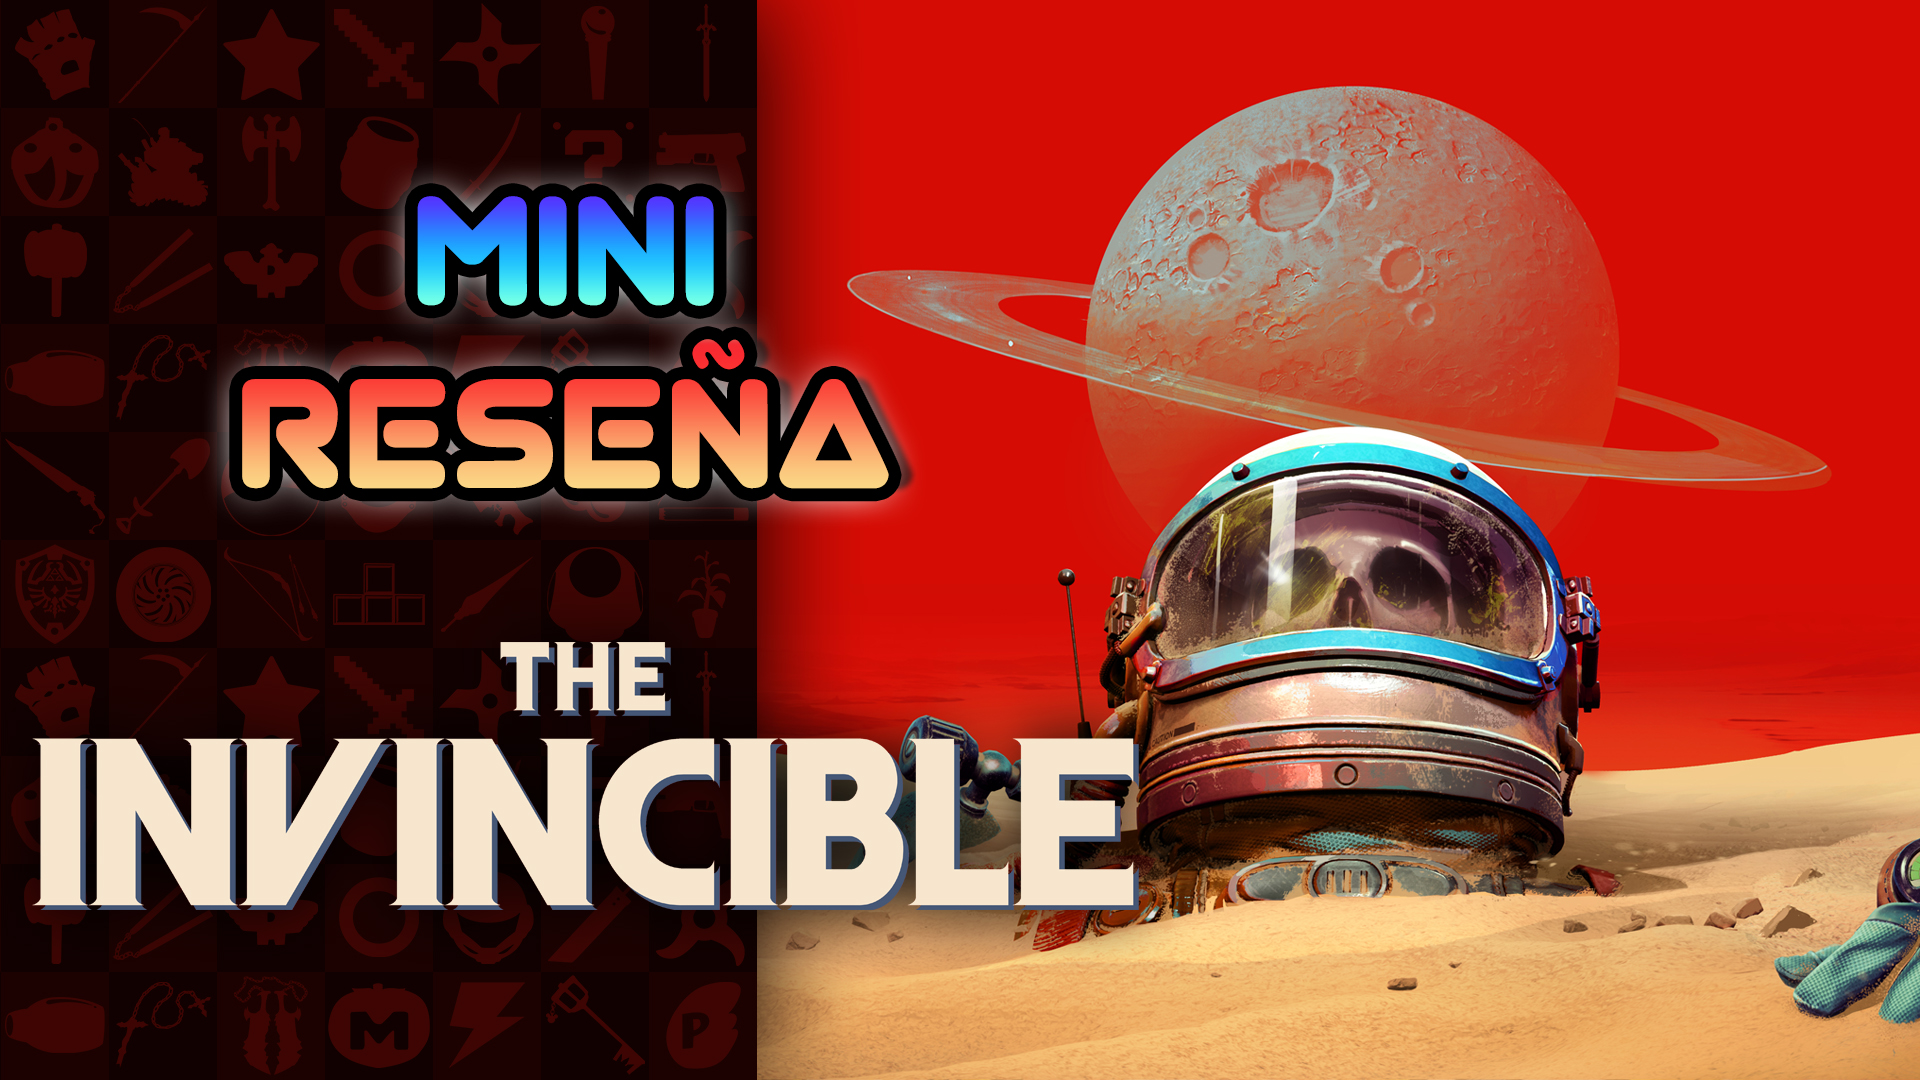 Mini Reseña The Invincible – Un excelente acompañamiento a la obra original